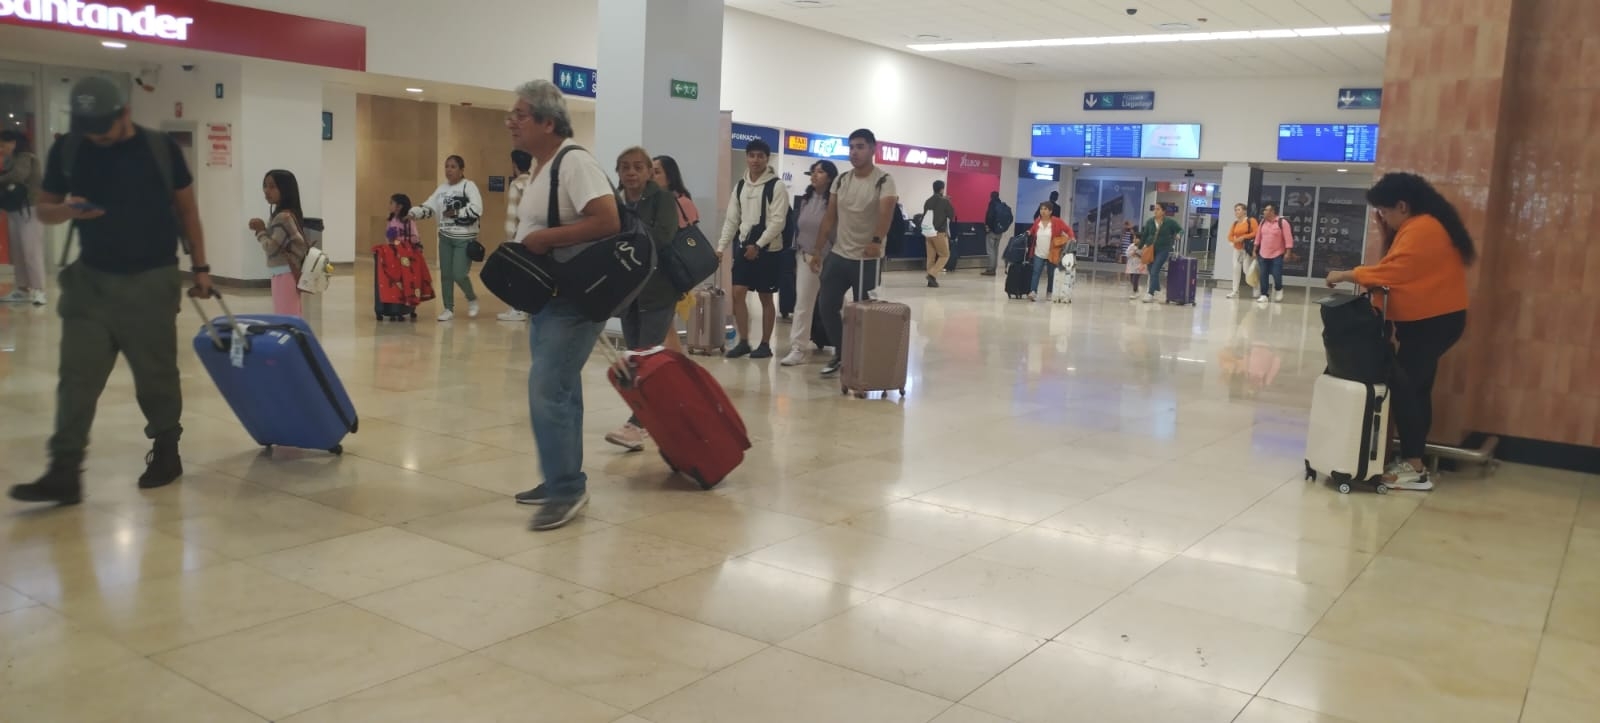 El Aeropuerto de Mérida mantiene buena movilzación de pasajeros